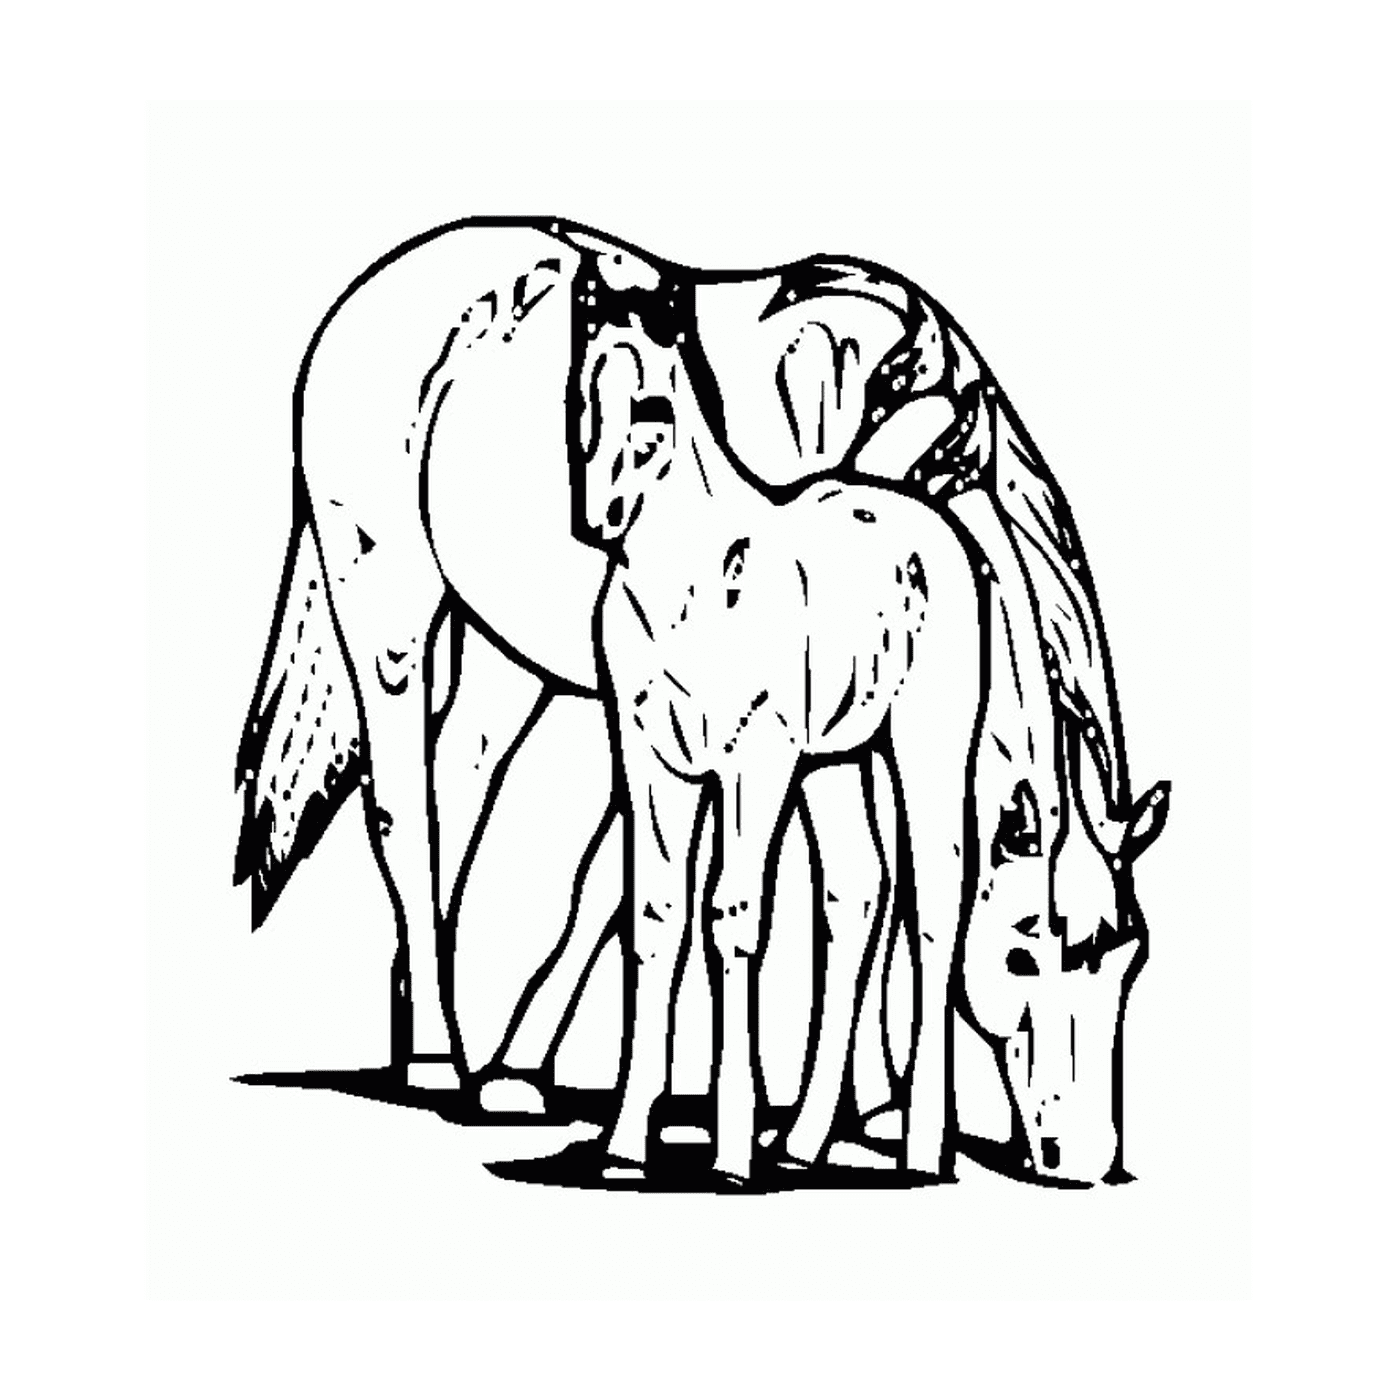  Pferd und sein Fohlen - Ein Pferd und ein Fohlen 